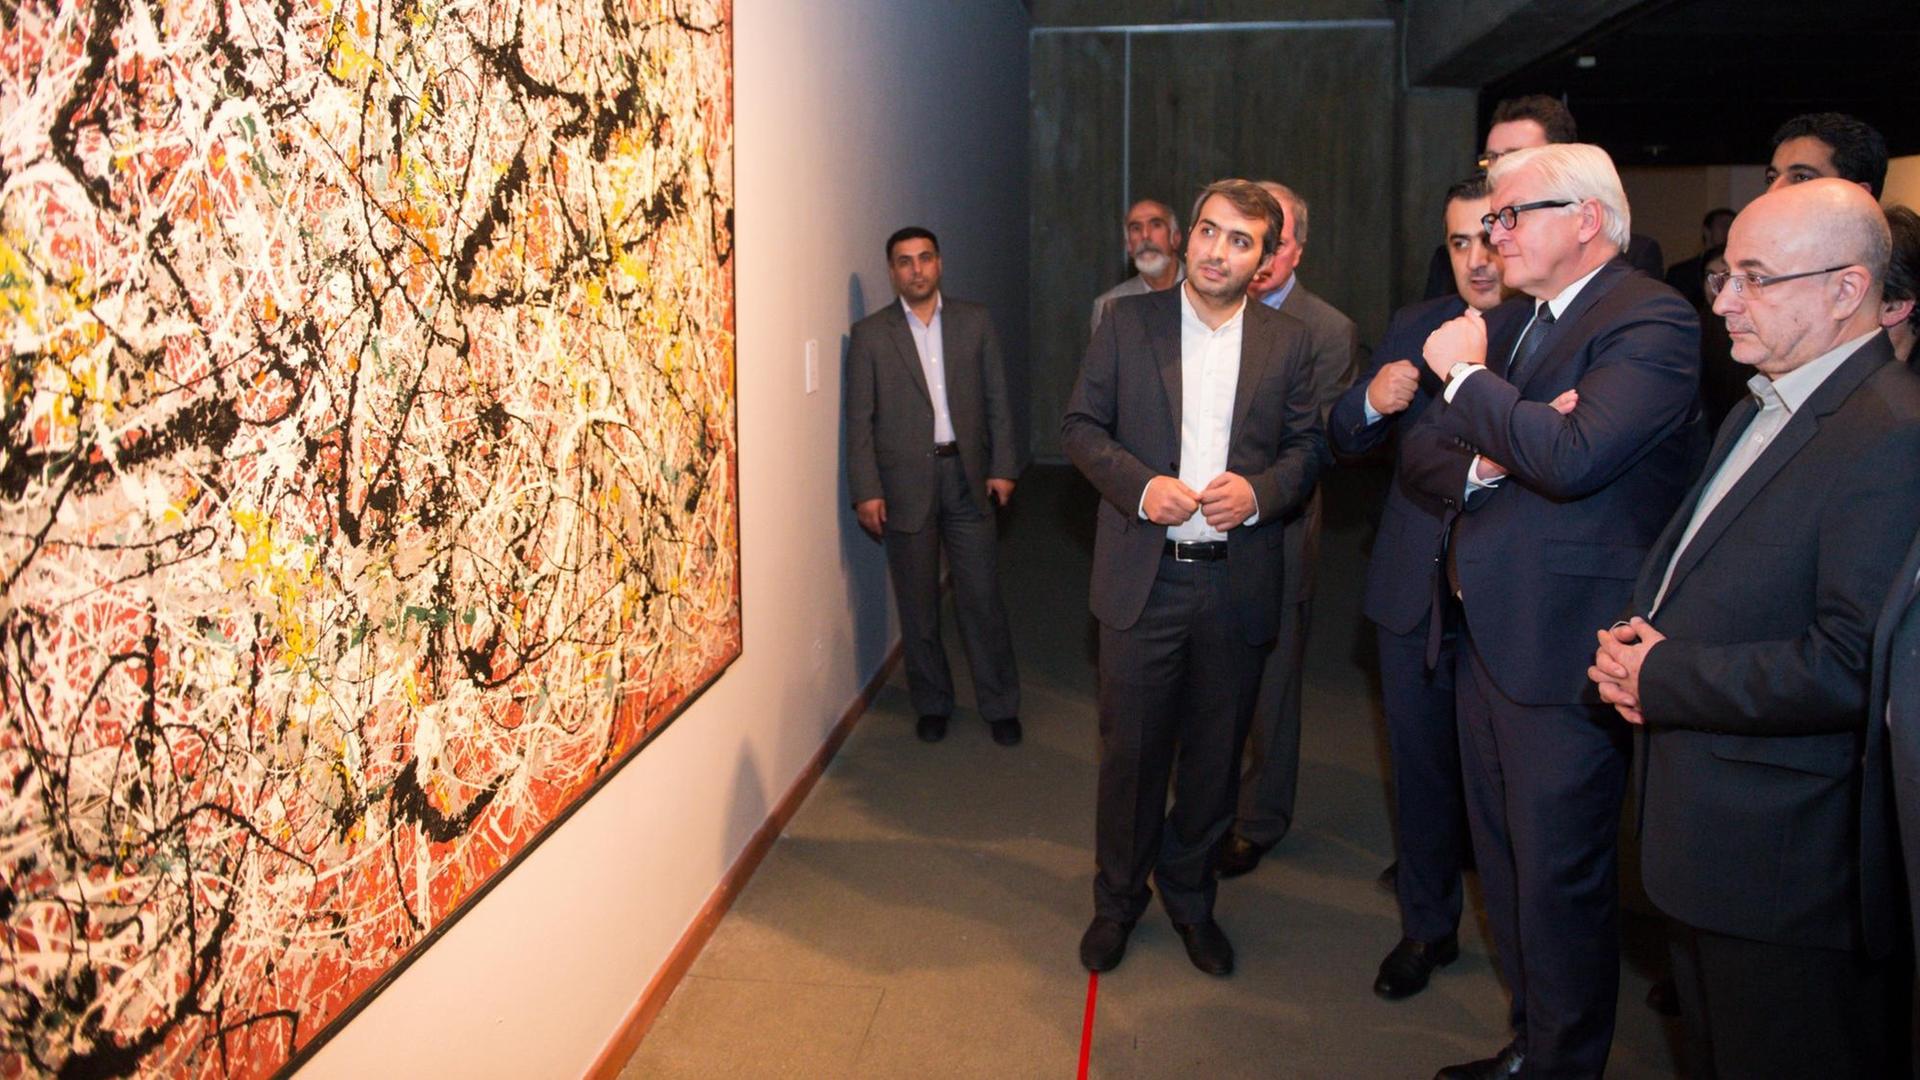 Sie sehen Bundesaußenminister Frank-Walter Steinmeier im "Tehran Museum of Contemporary Art (TMOCA)". Er schaut sich ein Gemälde von Jackson Pollock an.